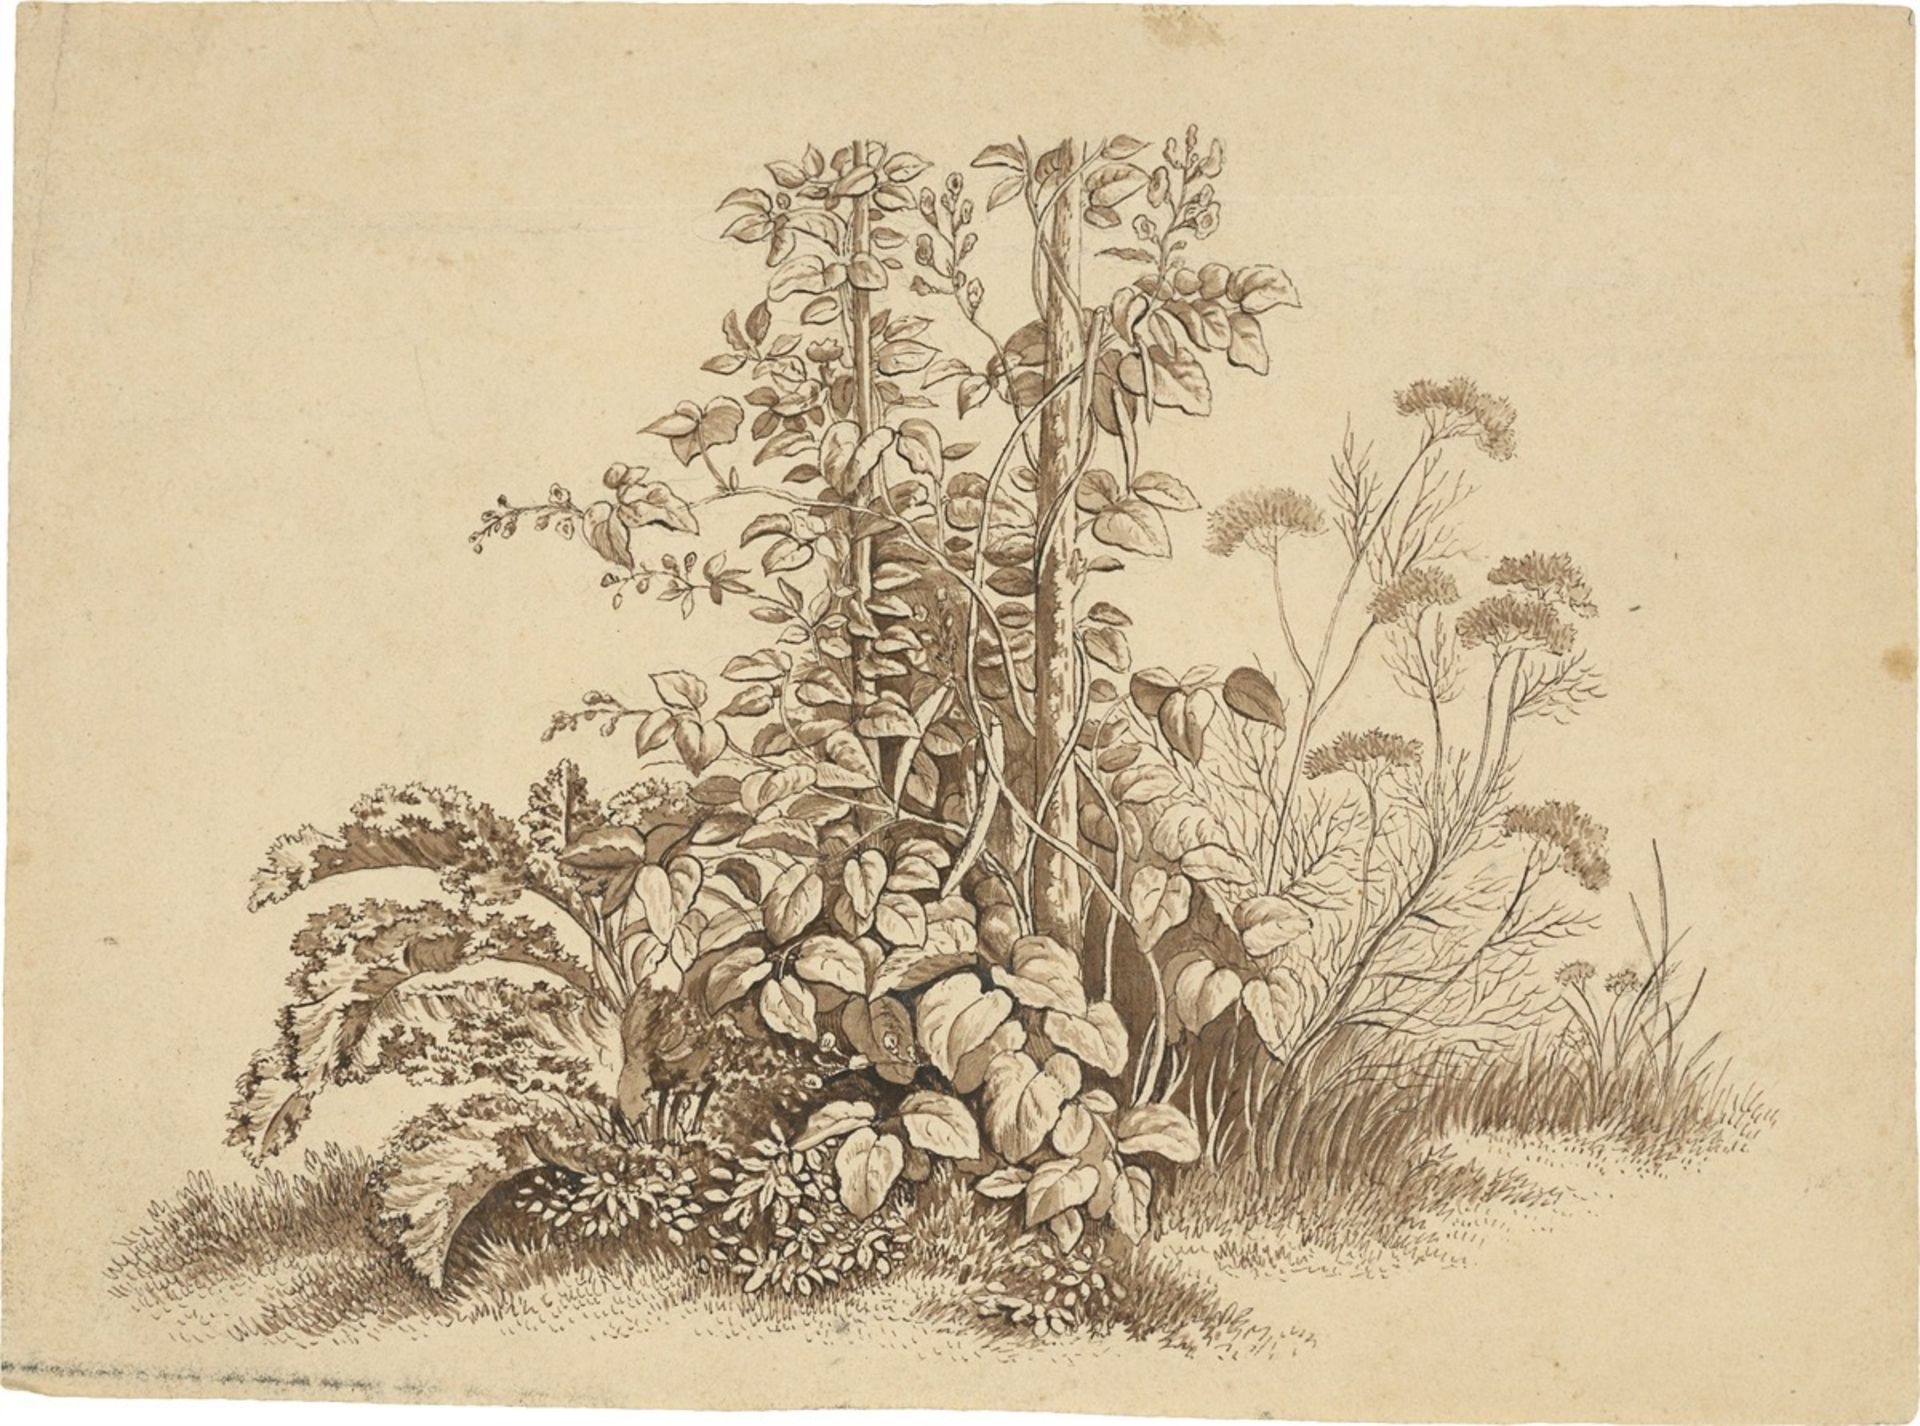 August Grahl. Two studies of herbs. 1828